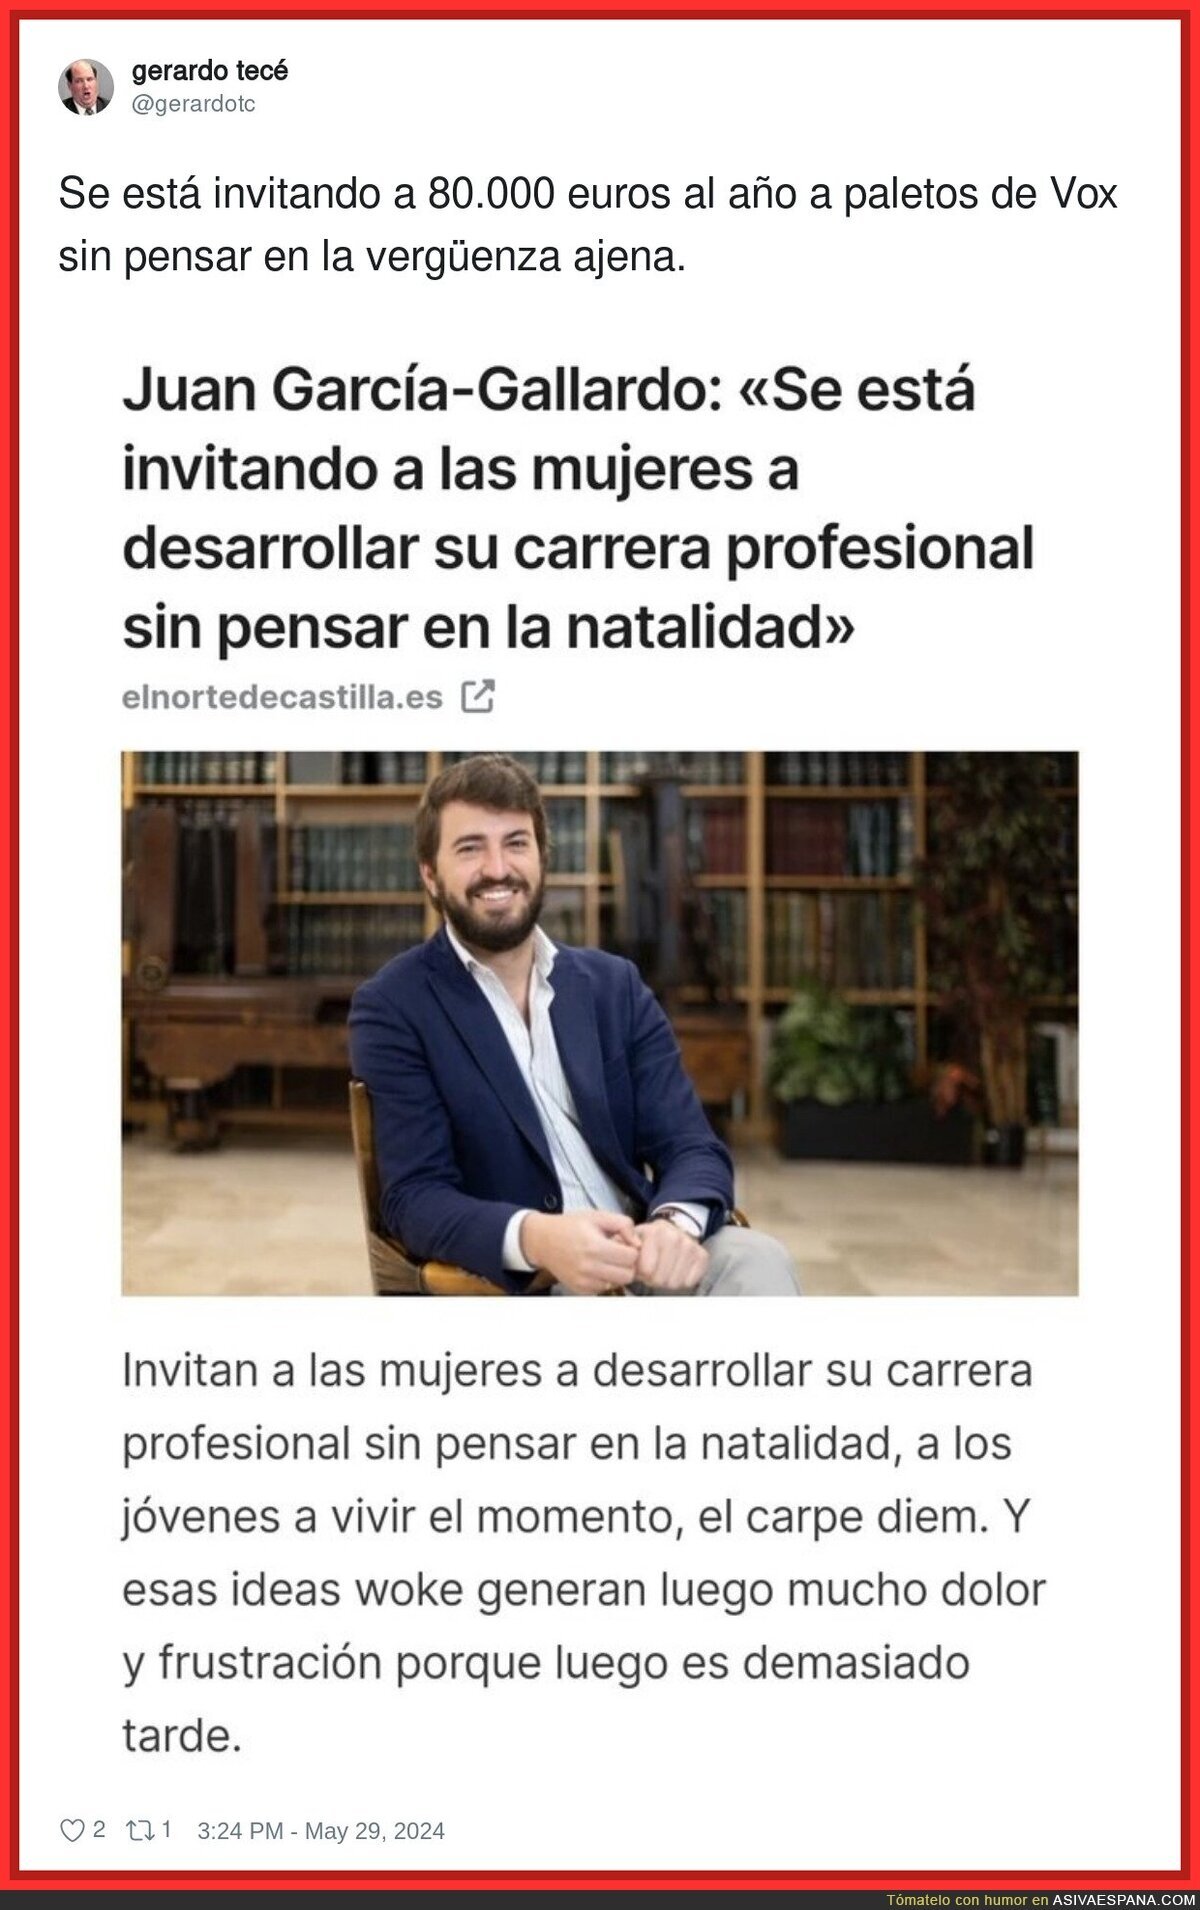 Juan García-Gallardo da vergüenza ajena con estas declaraciones sobre las mujeres y su futuro